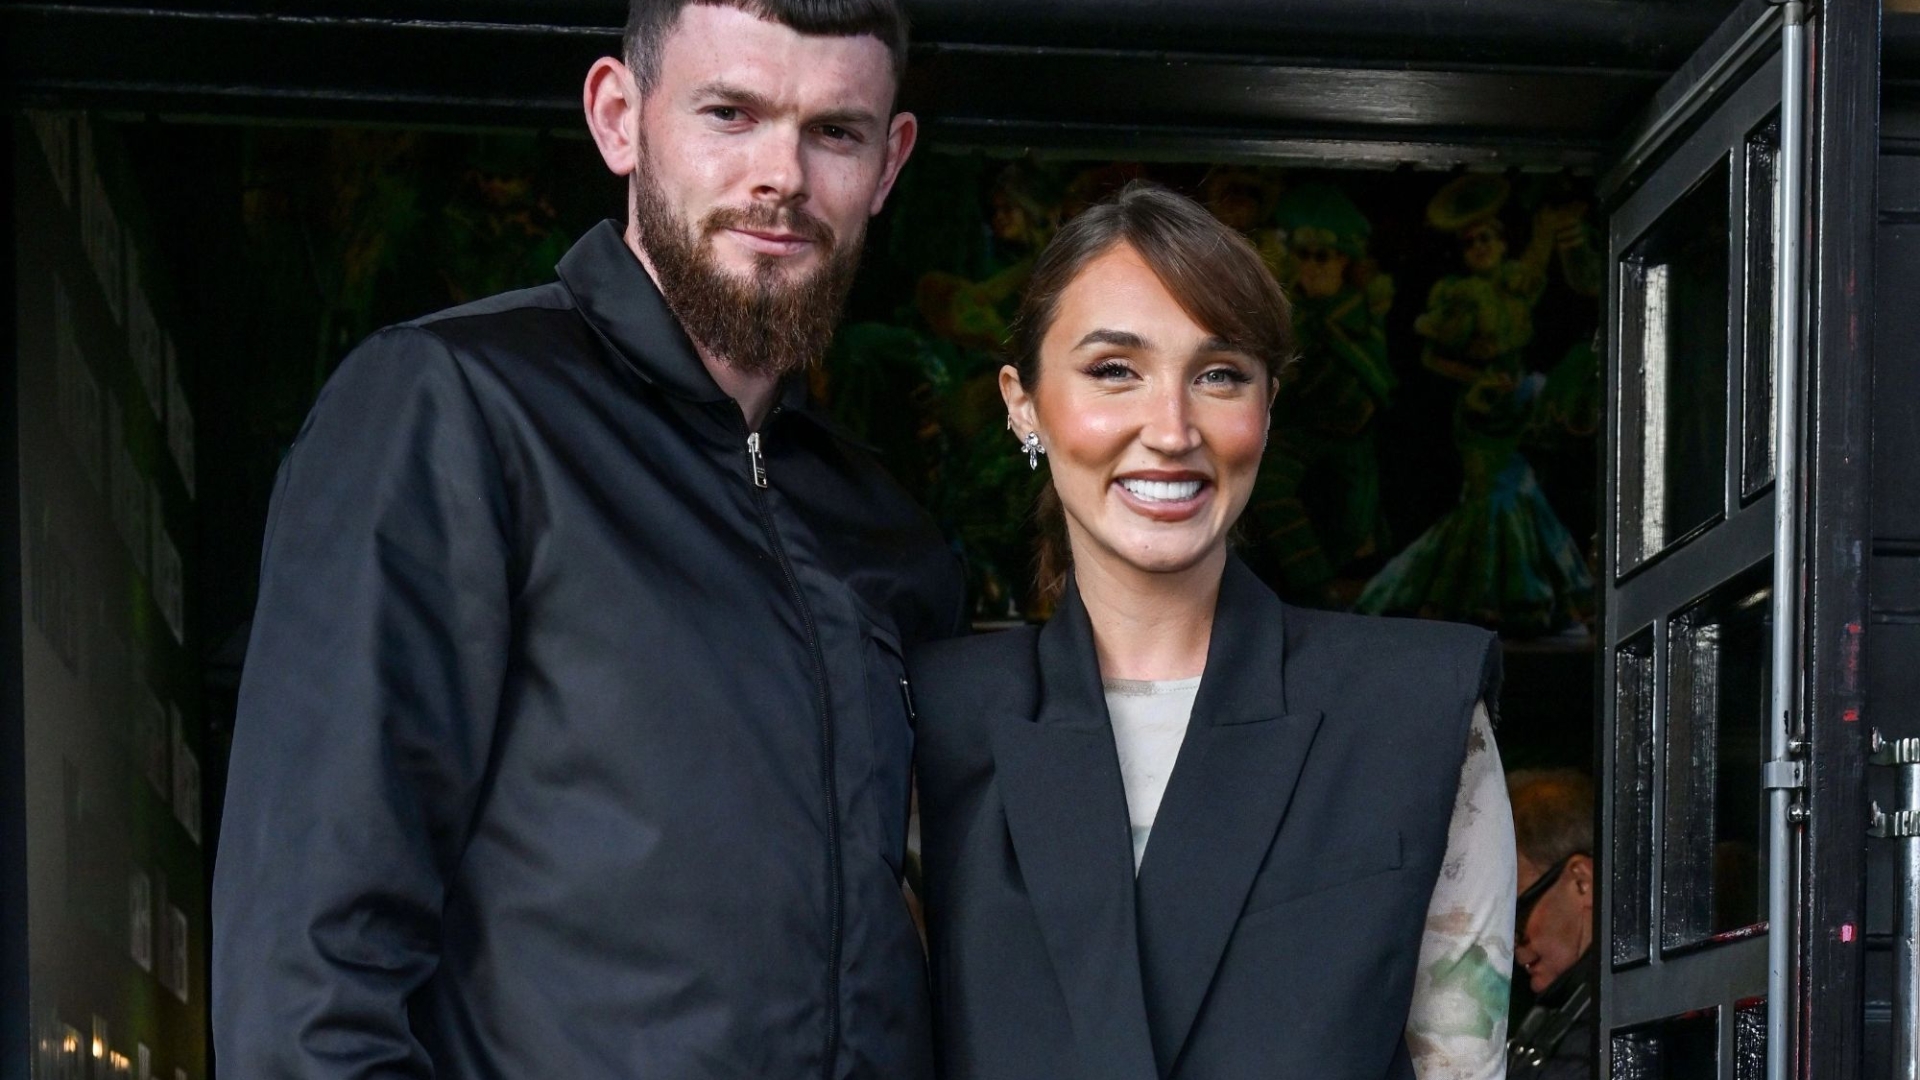 Megan McKenna makes her red carpet debut alongside Oliver Burke, her footballer boyfriend.